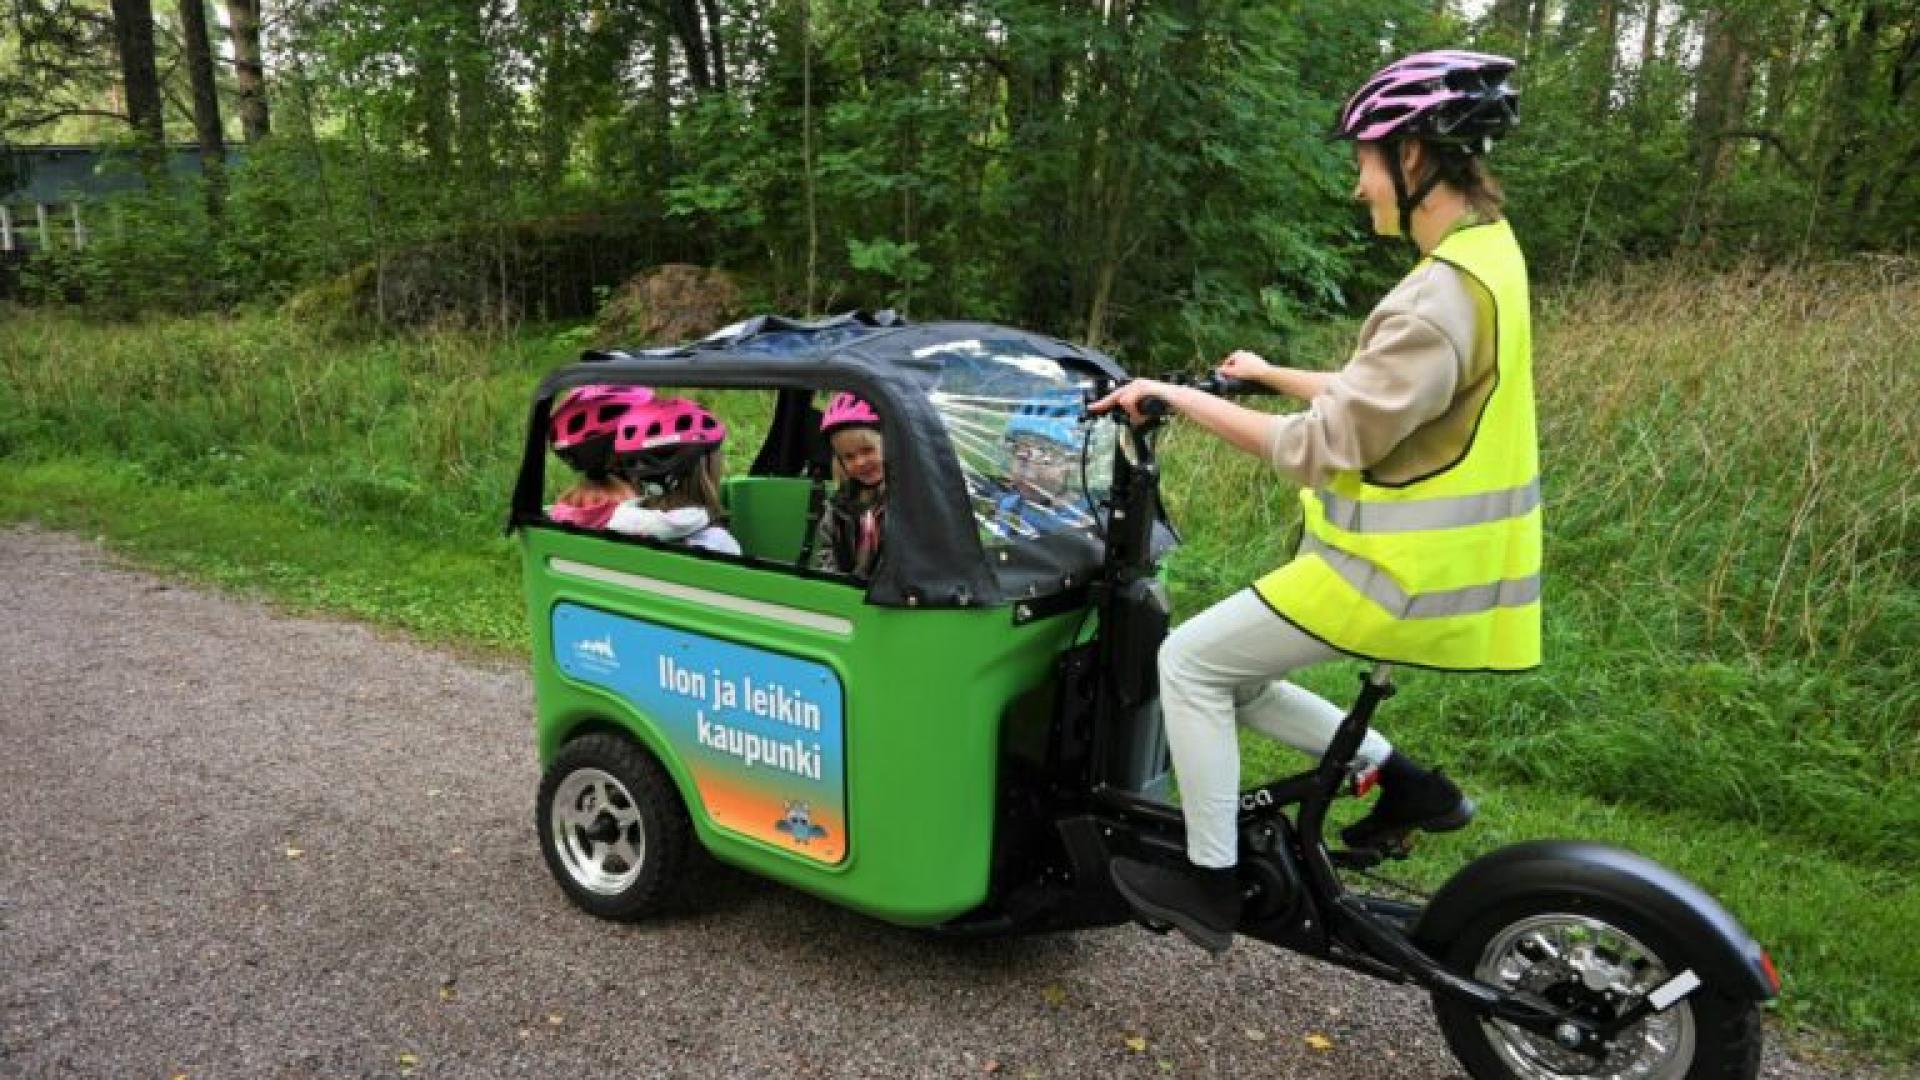 کسب و کار تولید دوچرخه برای حمل کودکان در فنلاند